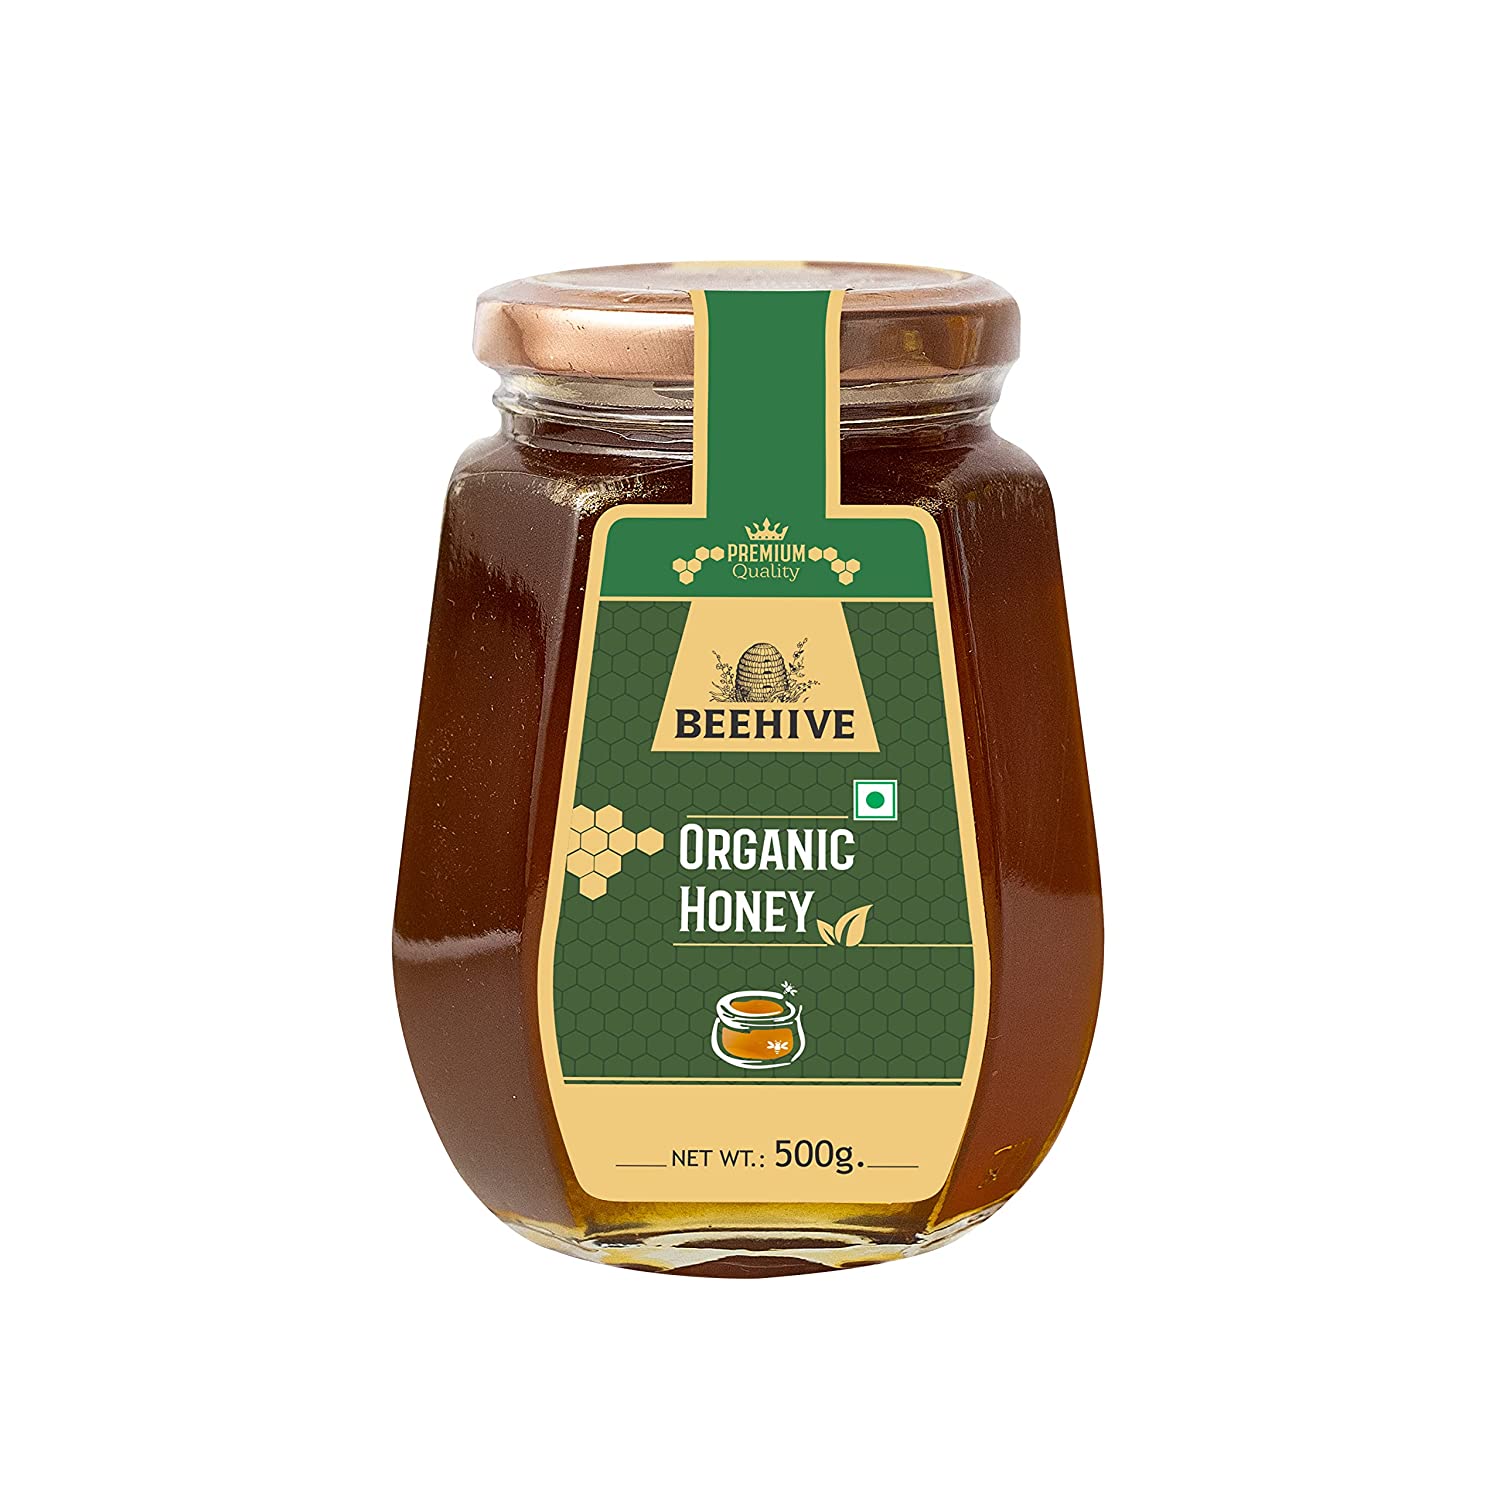 Beehive Organic Honey